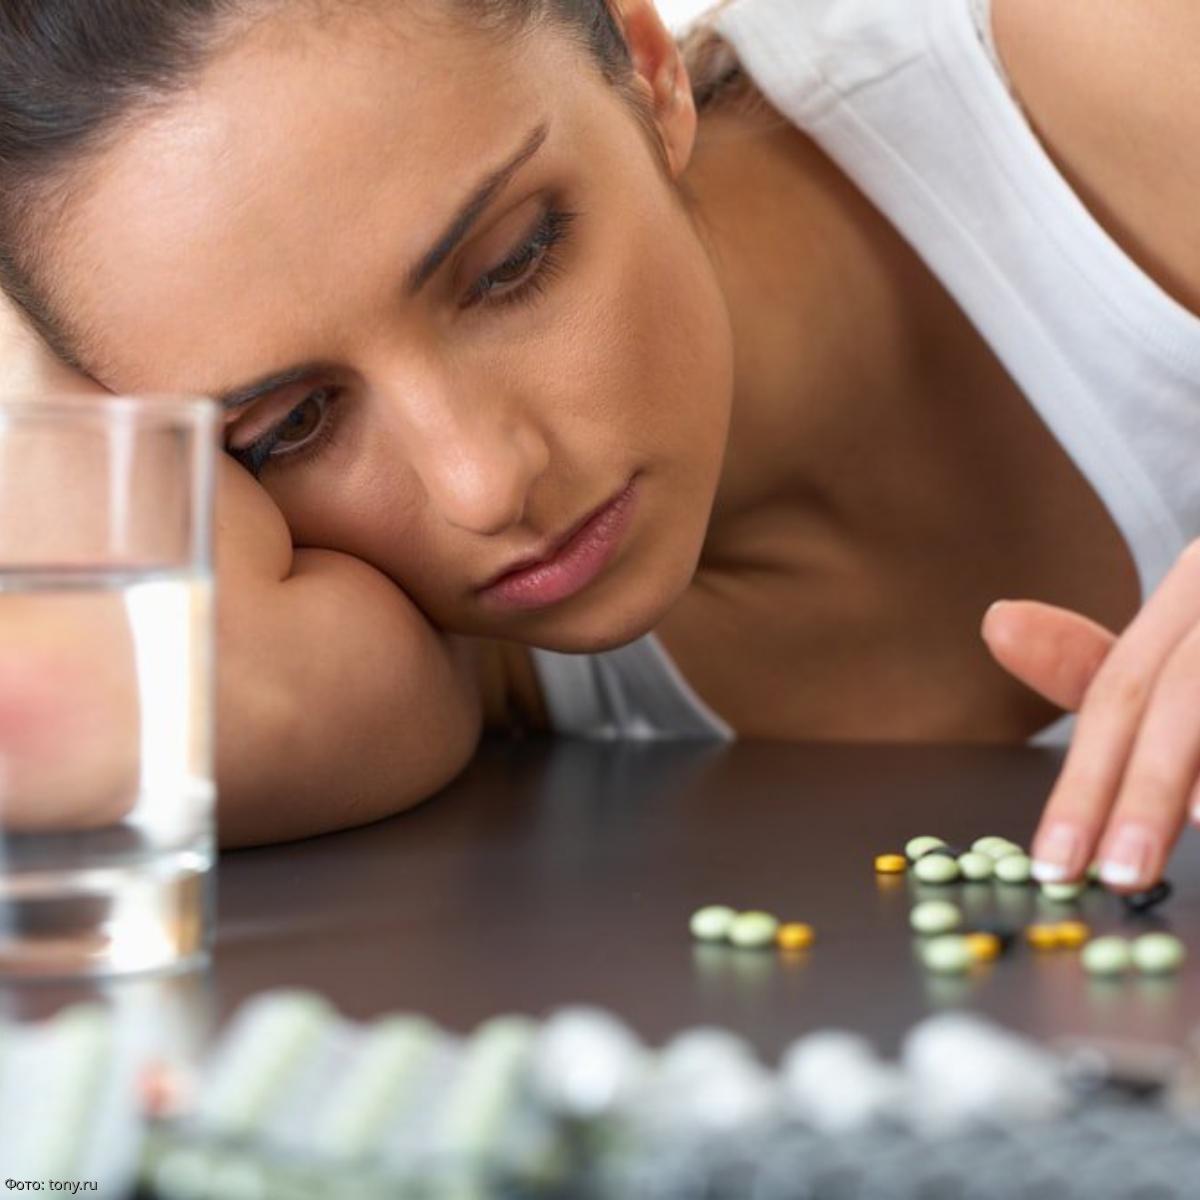 Польза антидепрессантов. Проблемы со здоровьем. Антидепрессанты девушка. Таблетки зависимость. Девушка пьет таблетки.